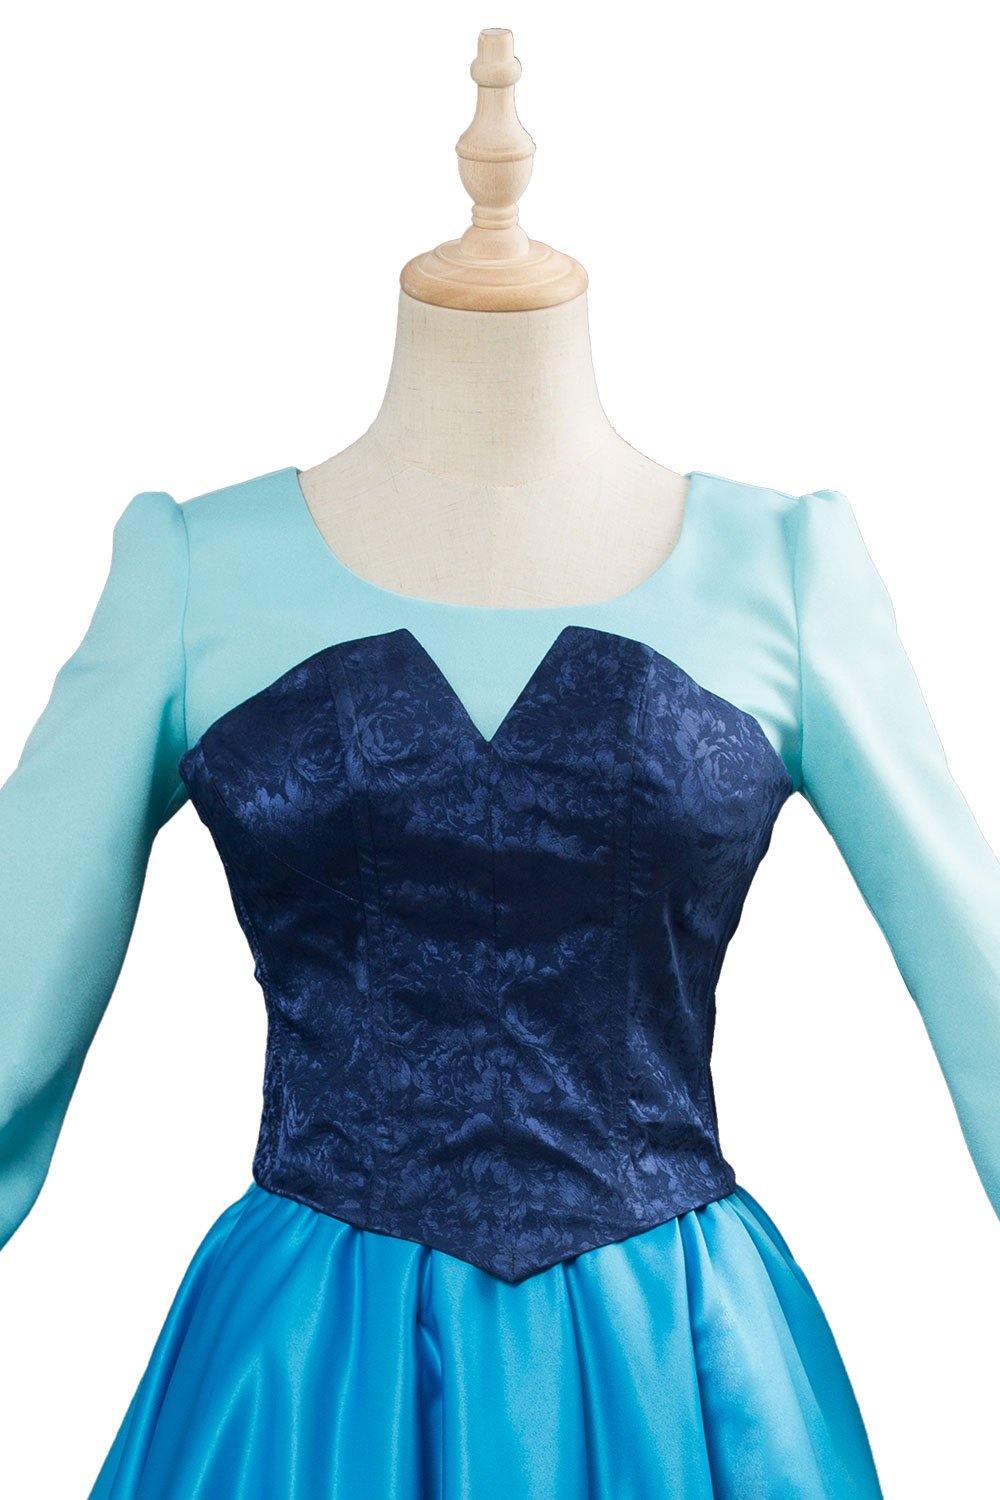 The Little Mermaid Arielle die Meerjungfrau Kleid Cosplay Kostüm Blau Kleid - cosplaycartde